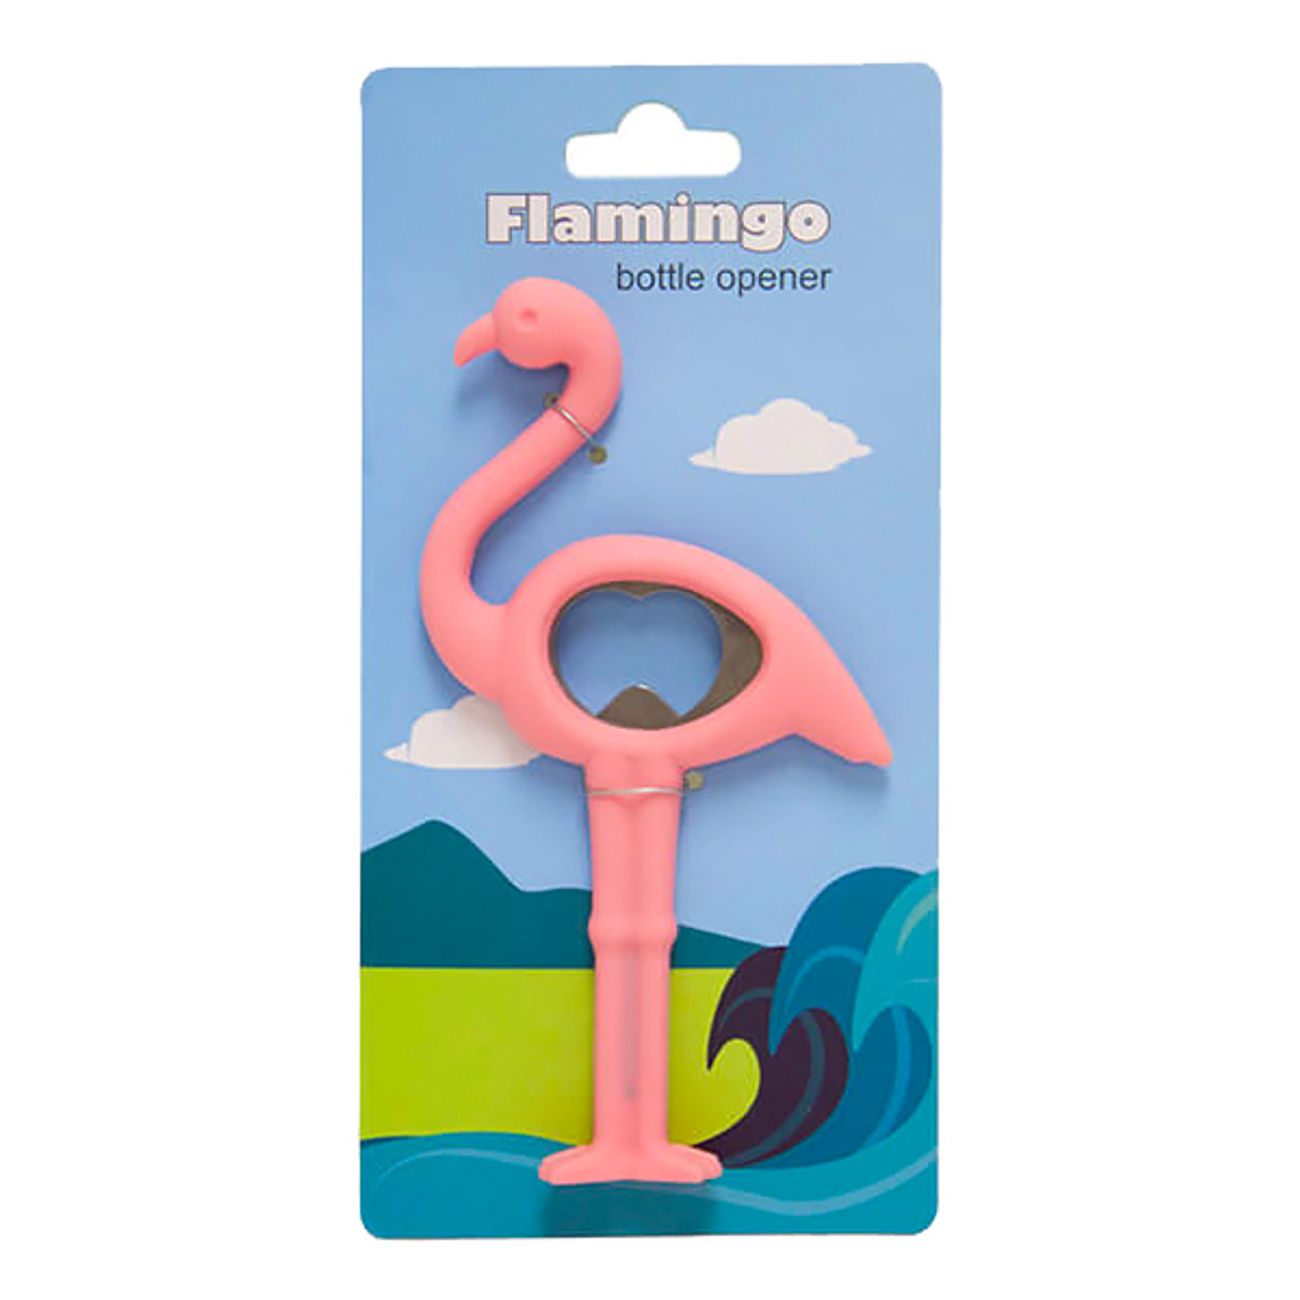 flamingo-flaskoppnare-1